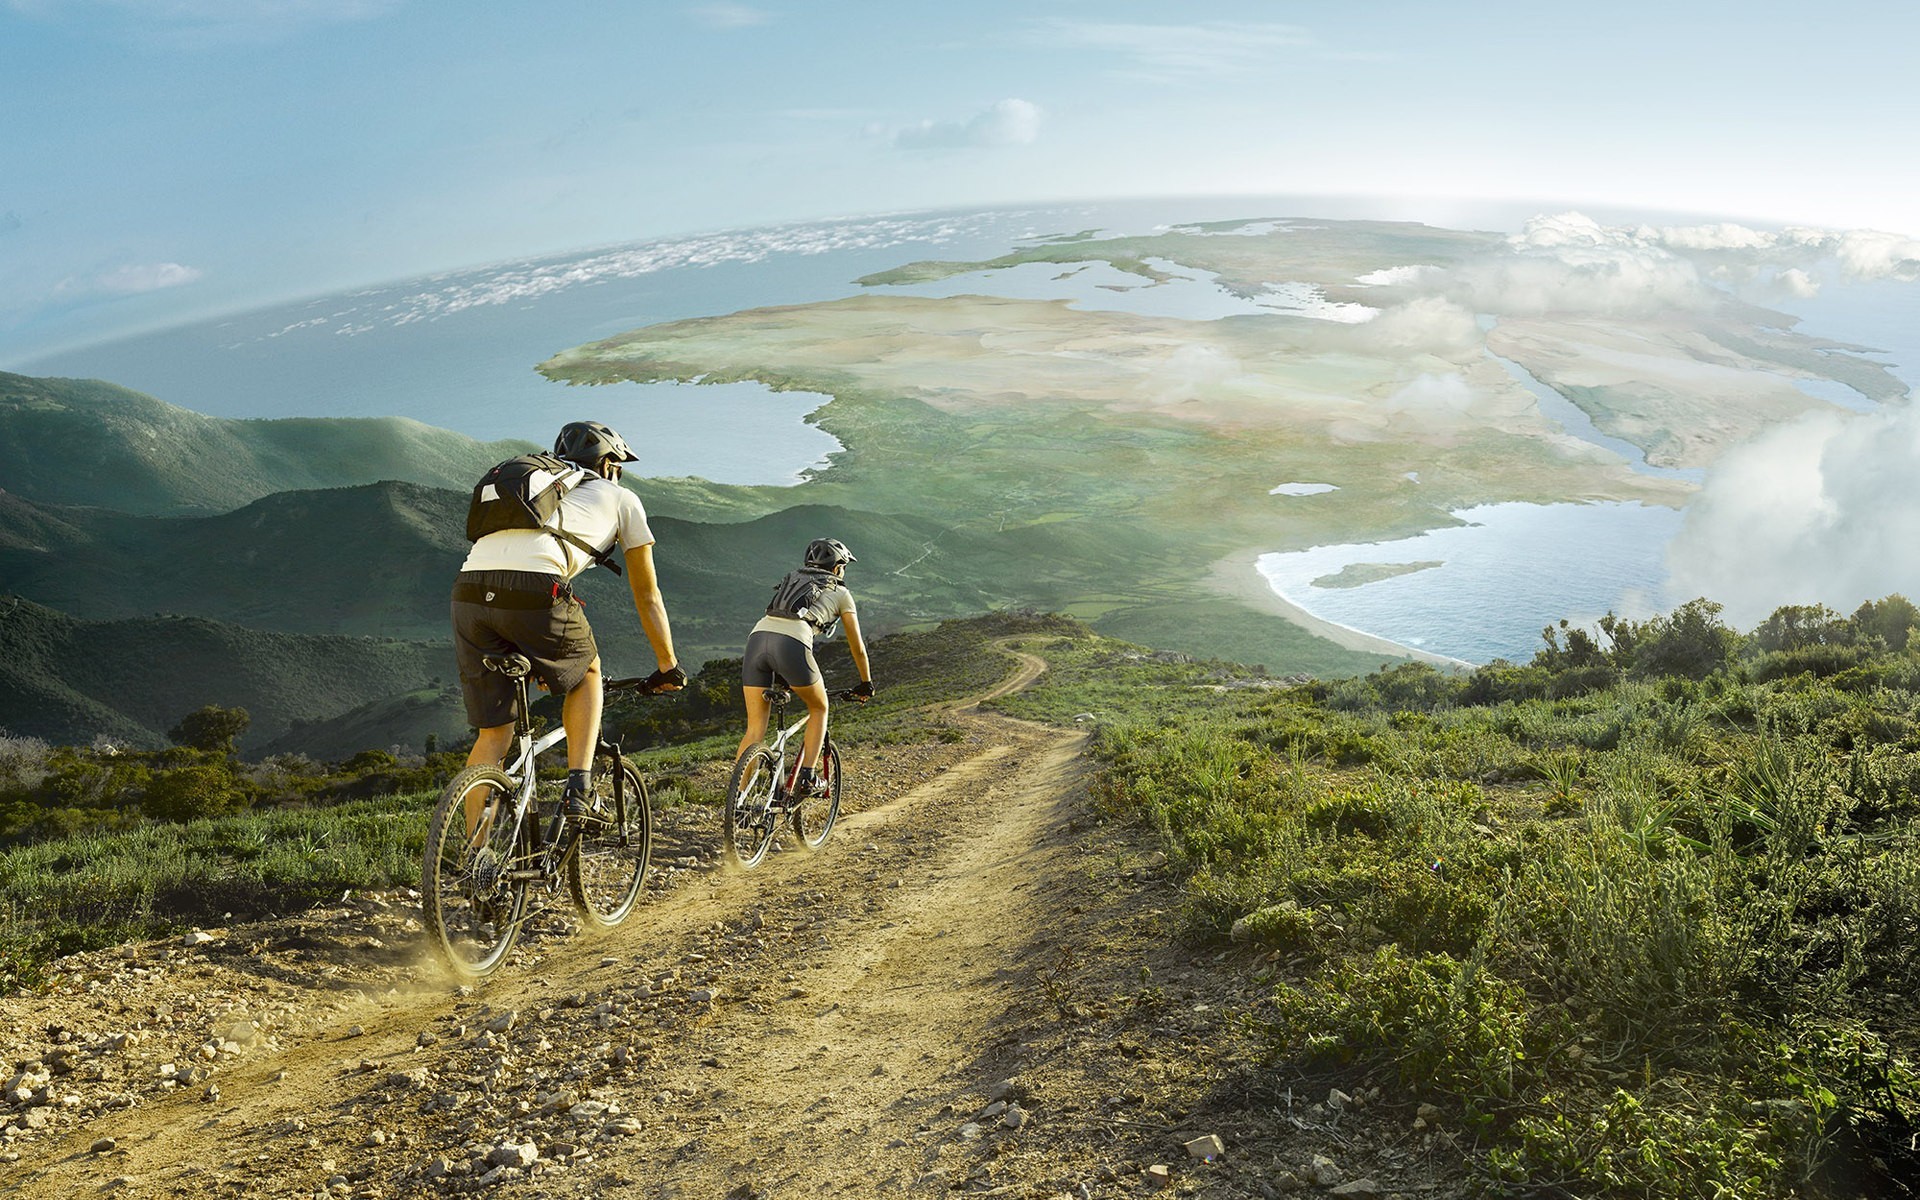 1920x1200 mountain-bike-view-wide-hd-wallpaper-download-mountain-biking-images-free1